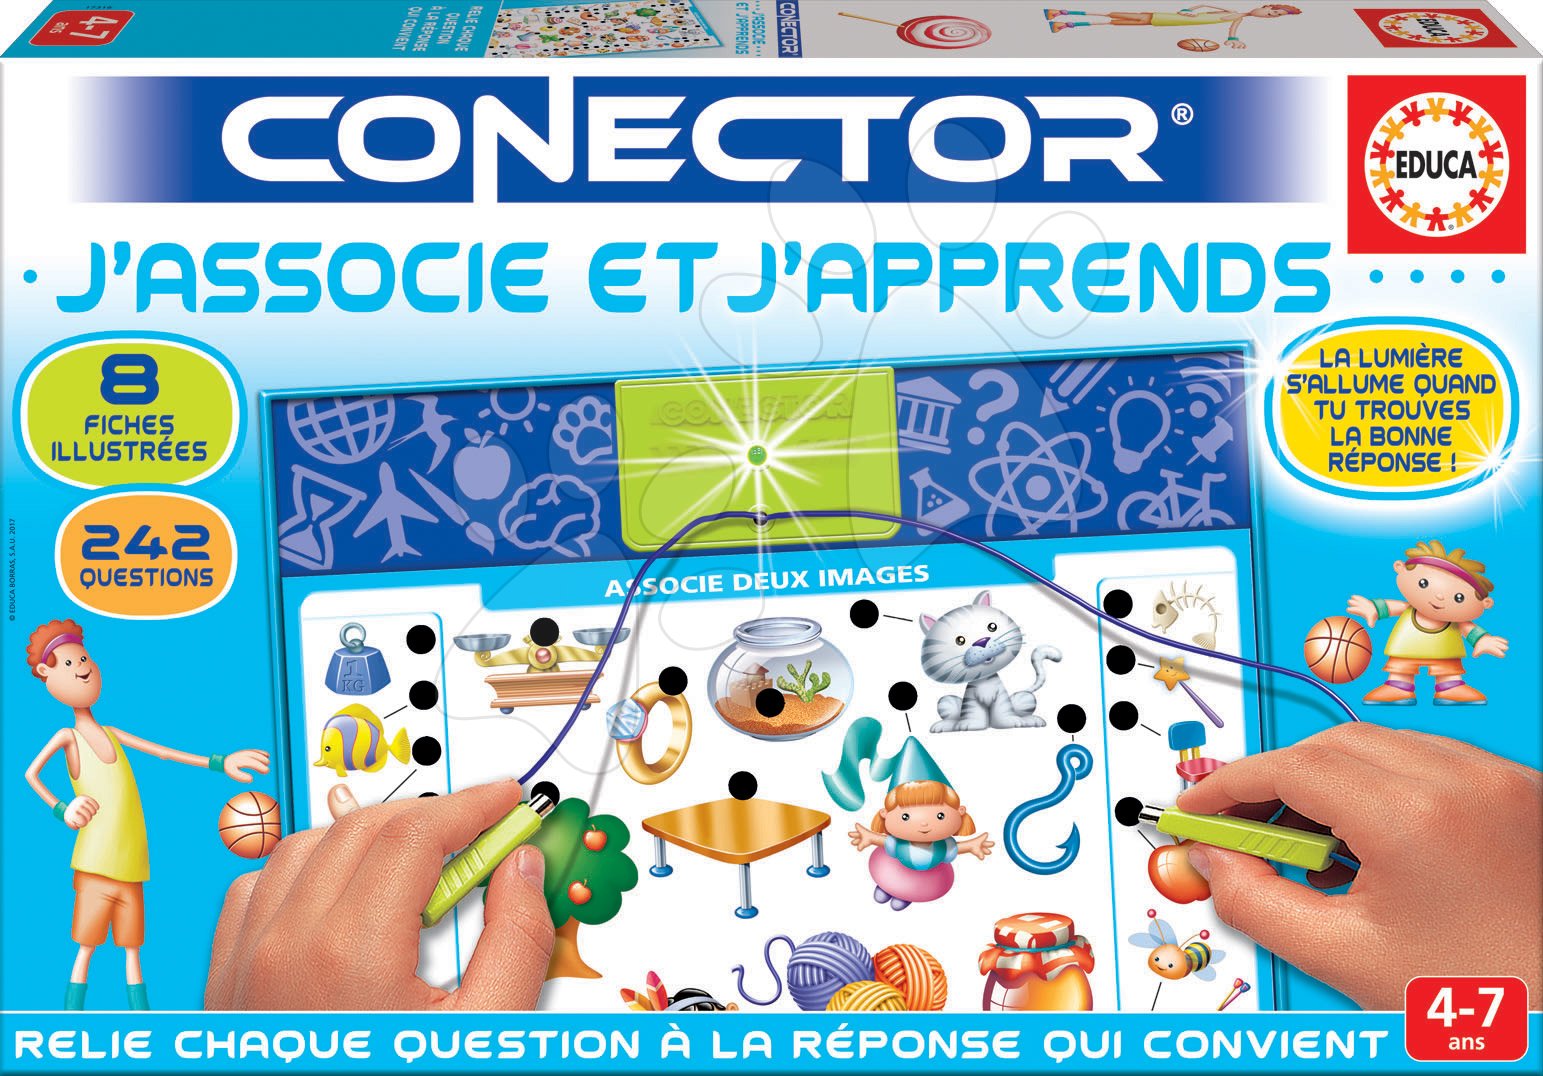 Oktatójáték Conector J'associe et J'apprends Educa francia 242 kérdés 4 - 7 éves korosztálynak Baba játék webáruház - játék rendelés online